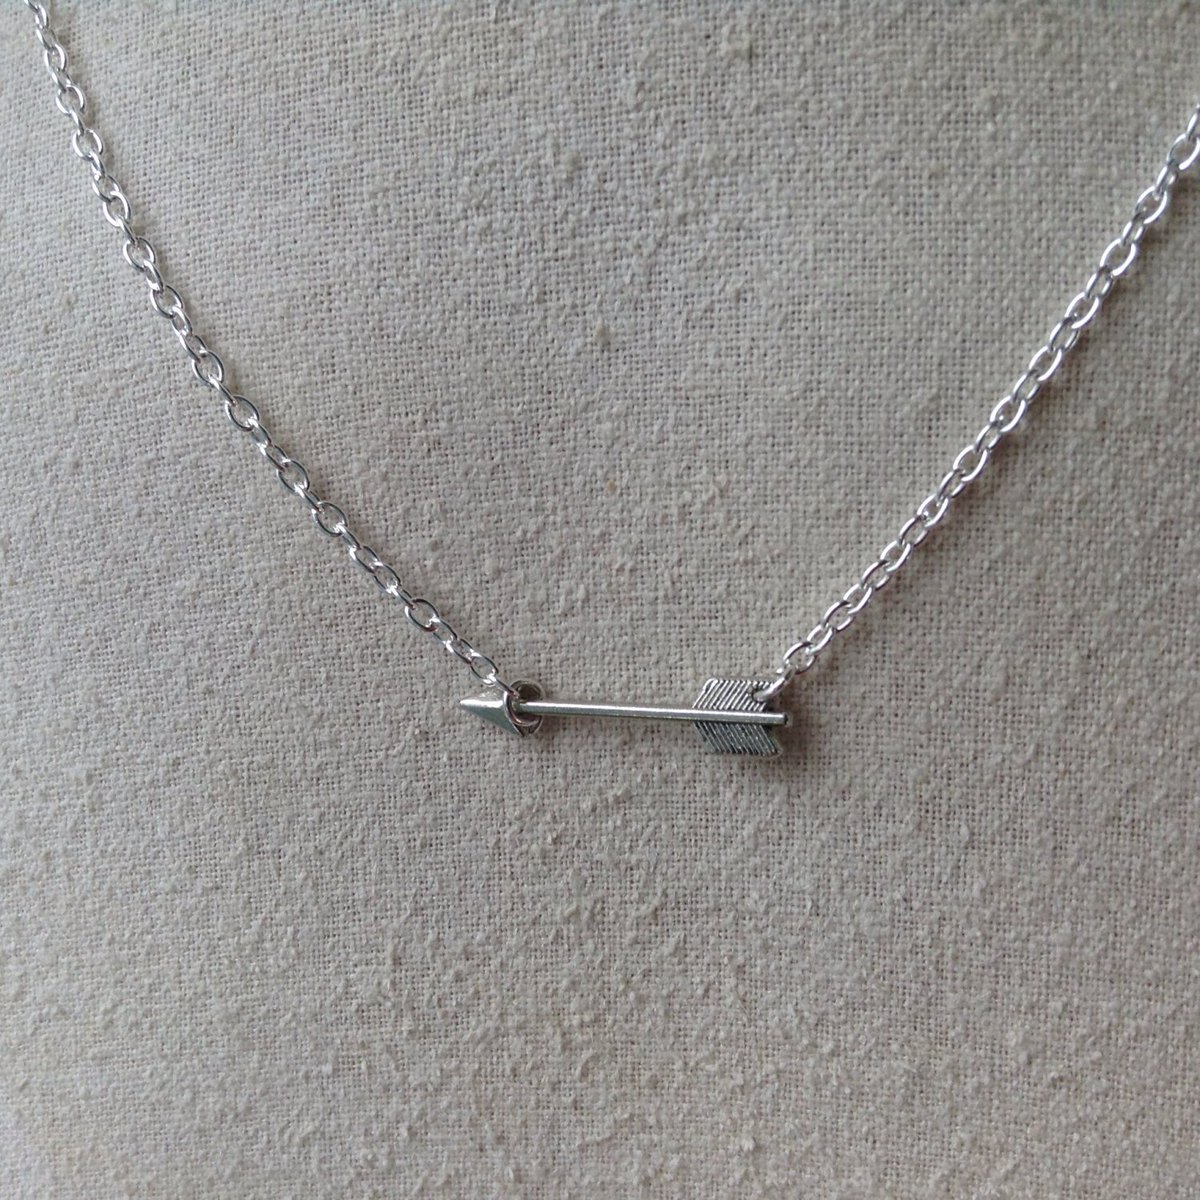 Silver Arrow Necklace tuppu.net/e67818b6 #Bridesmaidgifts #Giftforher #jewelry #SheilasCharms #ArrowJewelry